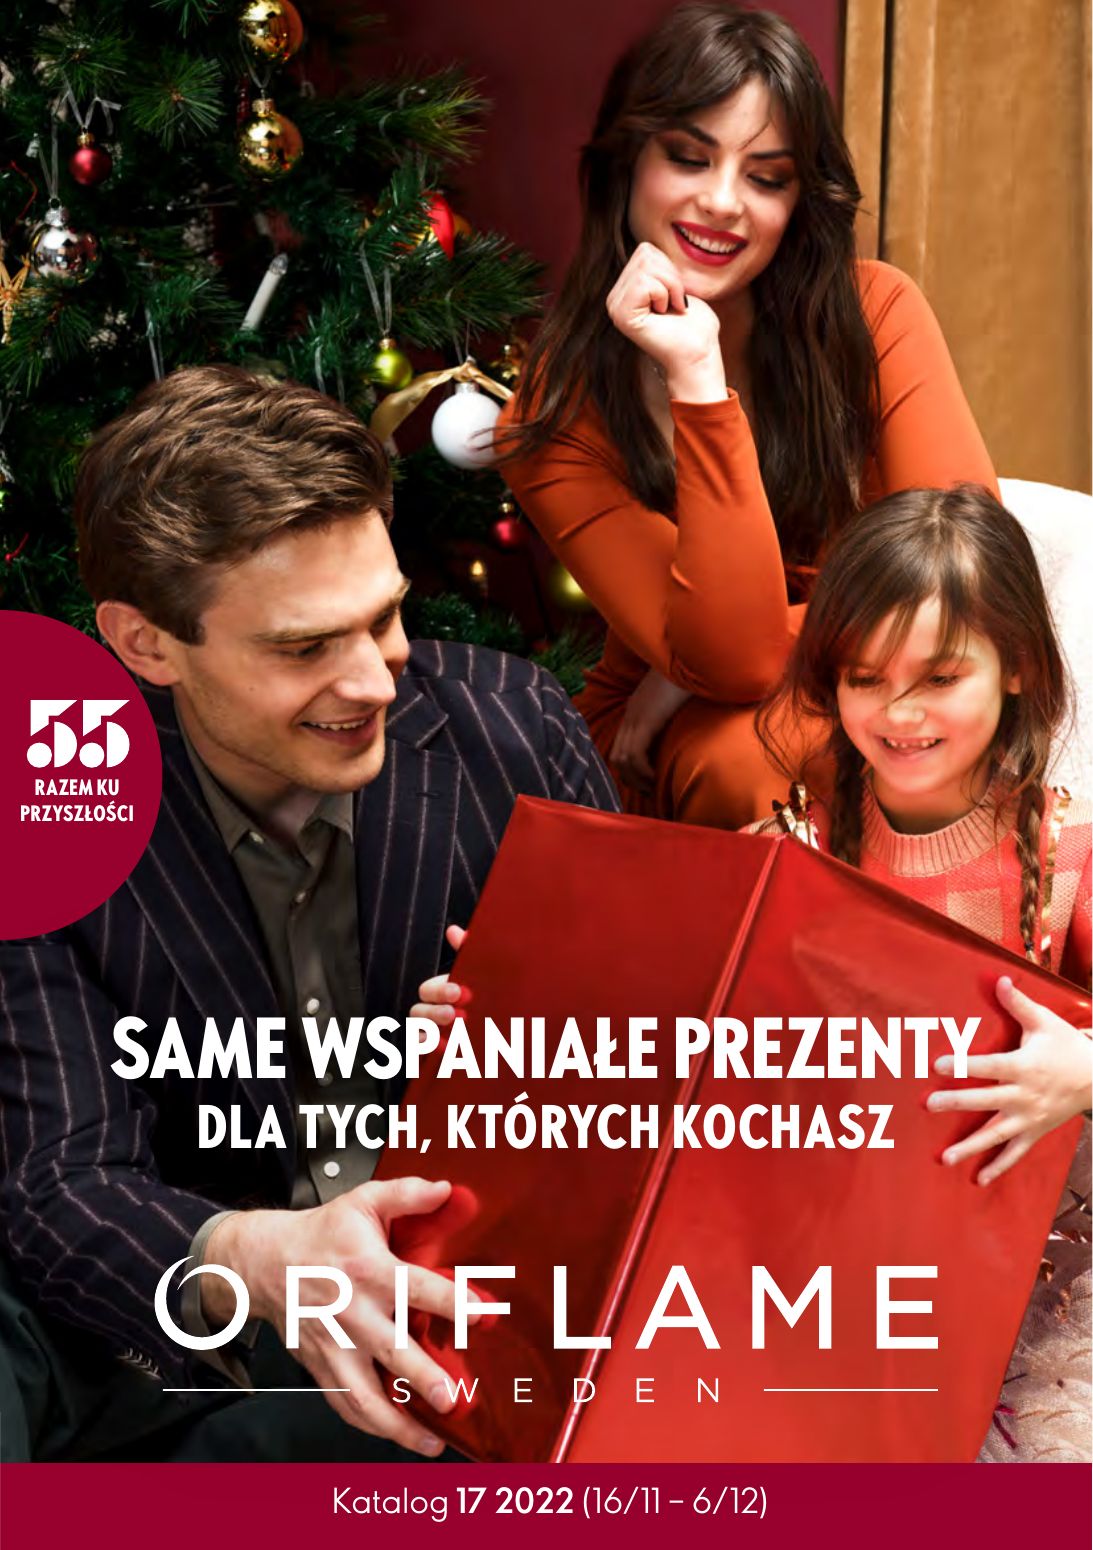 gazetka promocyjna ORIFLAME – Same wspaniałe prezenty - Strona 1